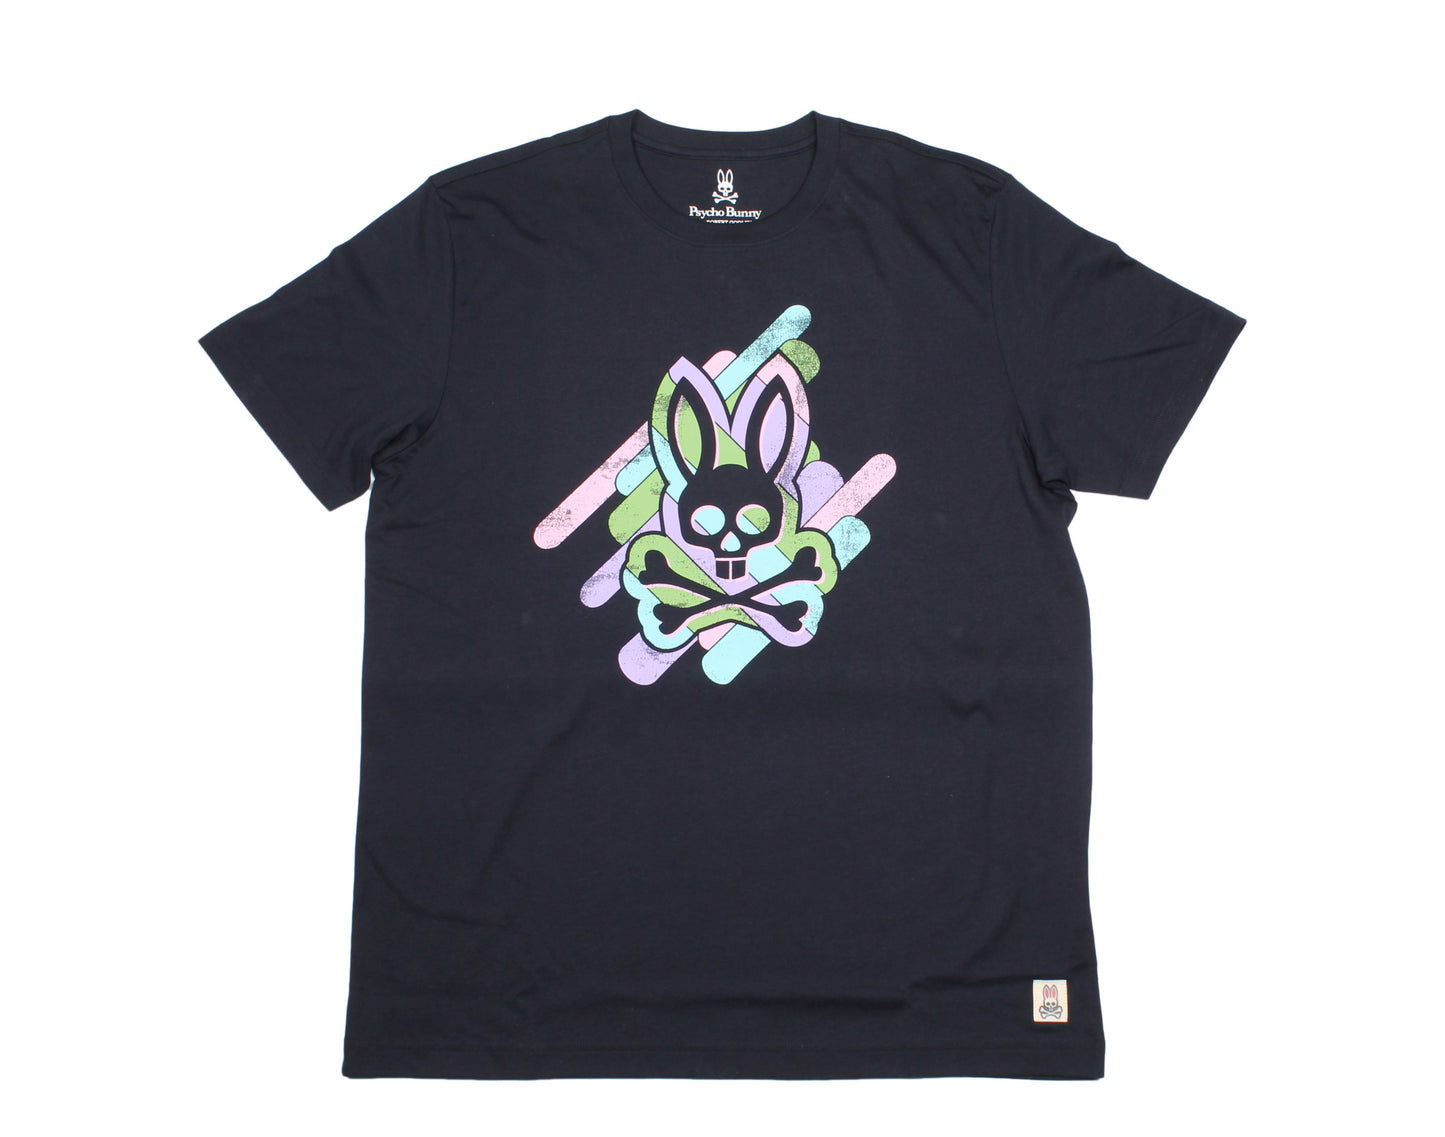 Psycho Bunny Printed Graphic Navy Blue Men's Tee Shirt B6U618F1PC-NVY